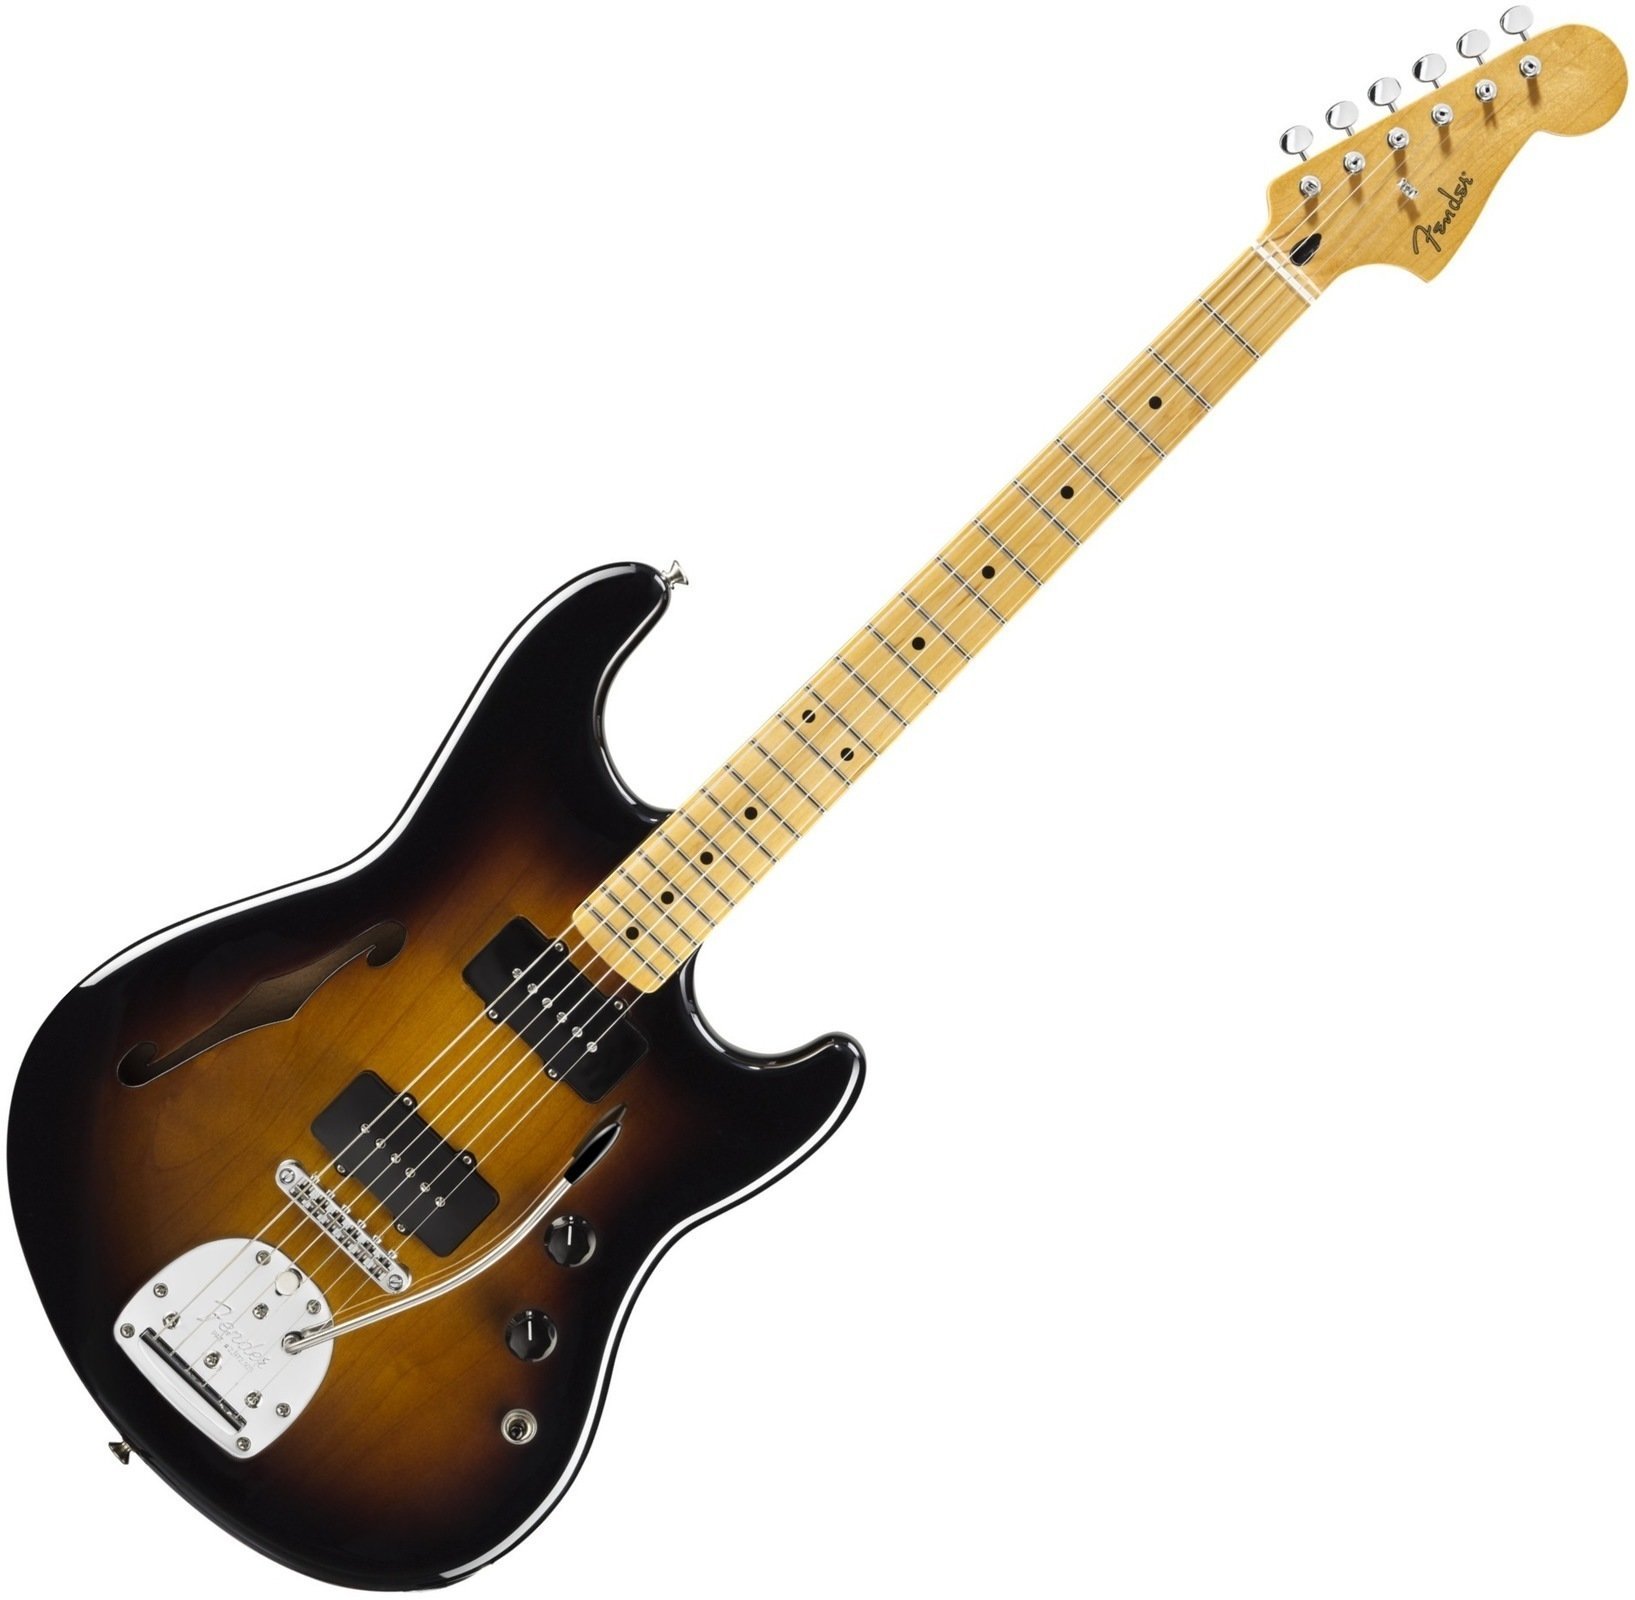 Električna gitara Fender Pawn Shop Offset Special, Maple Fingerboard, 2-Color Sunburst